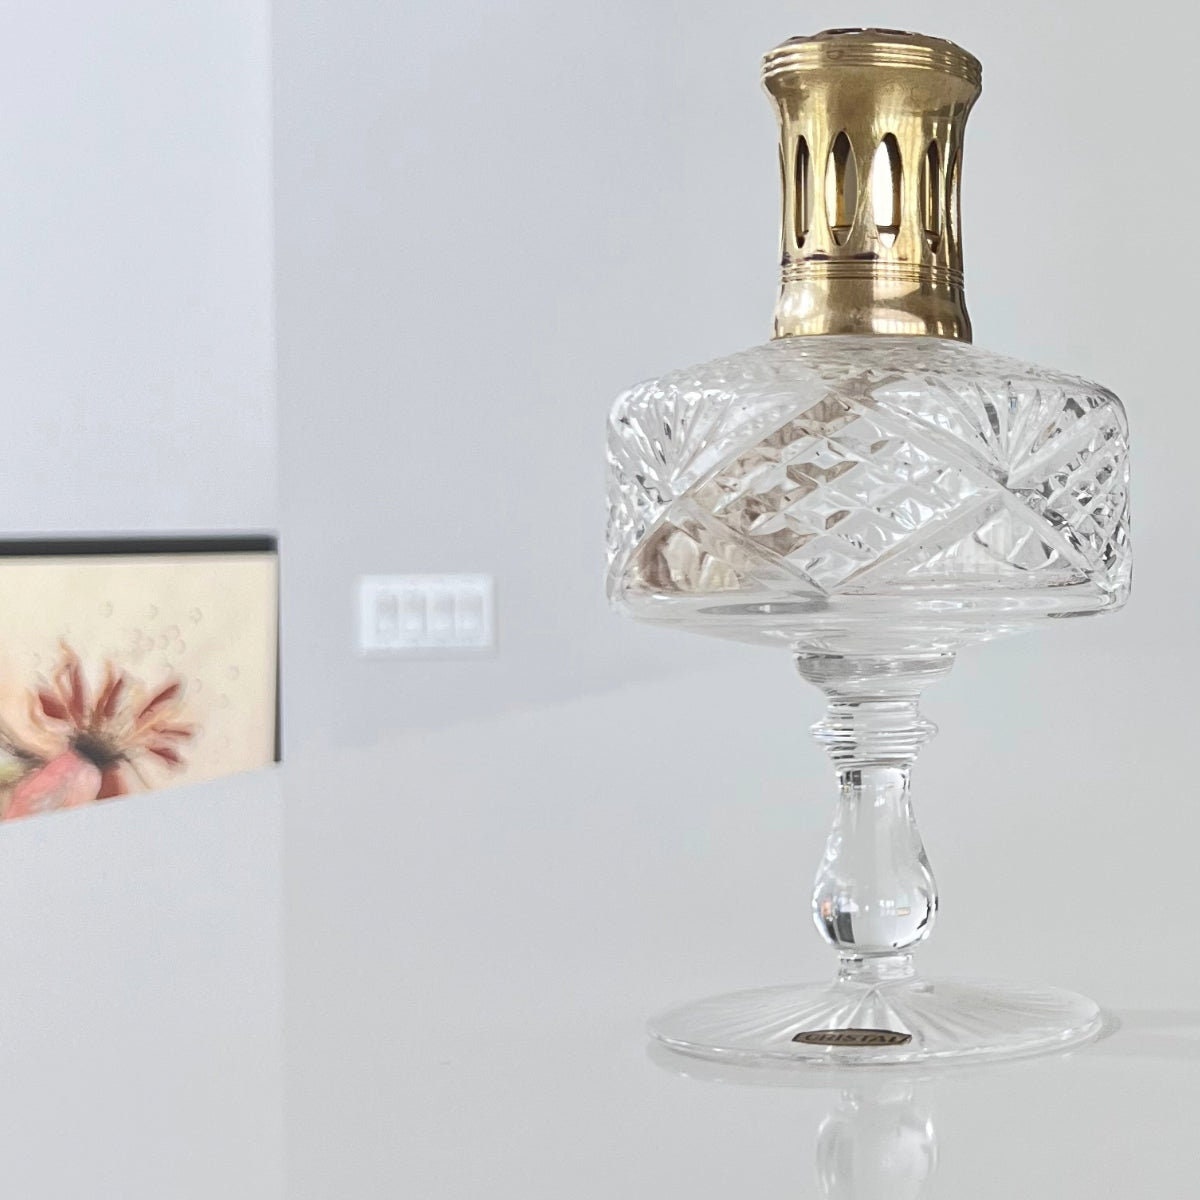 Vintage Crystal Lampe Berger Home Fragrance Made in France 